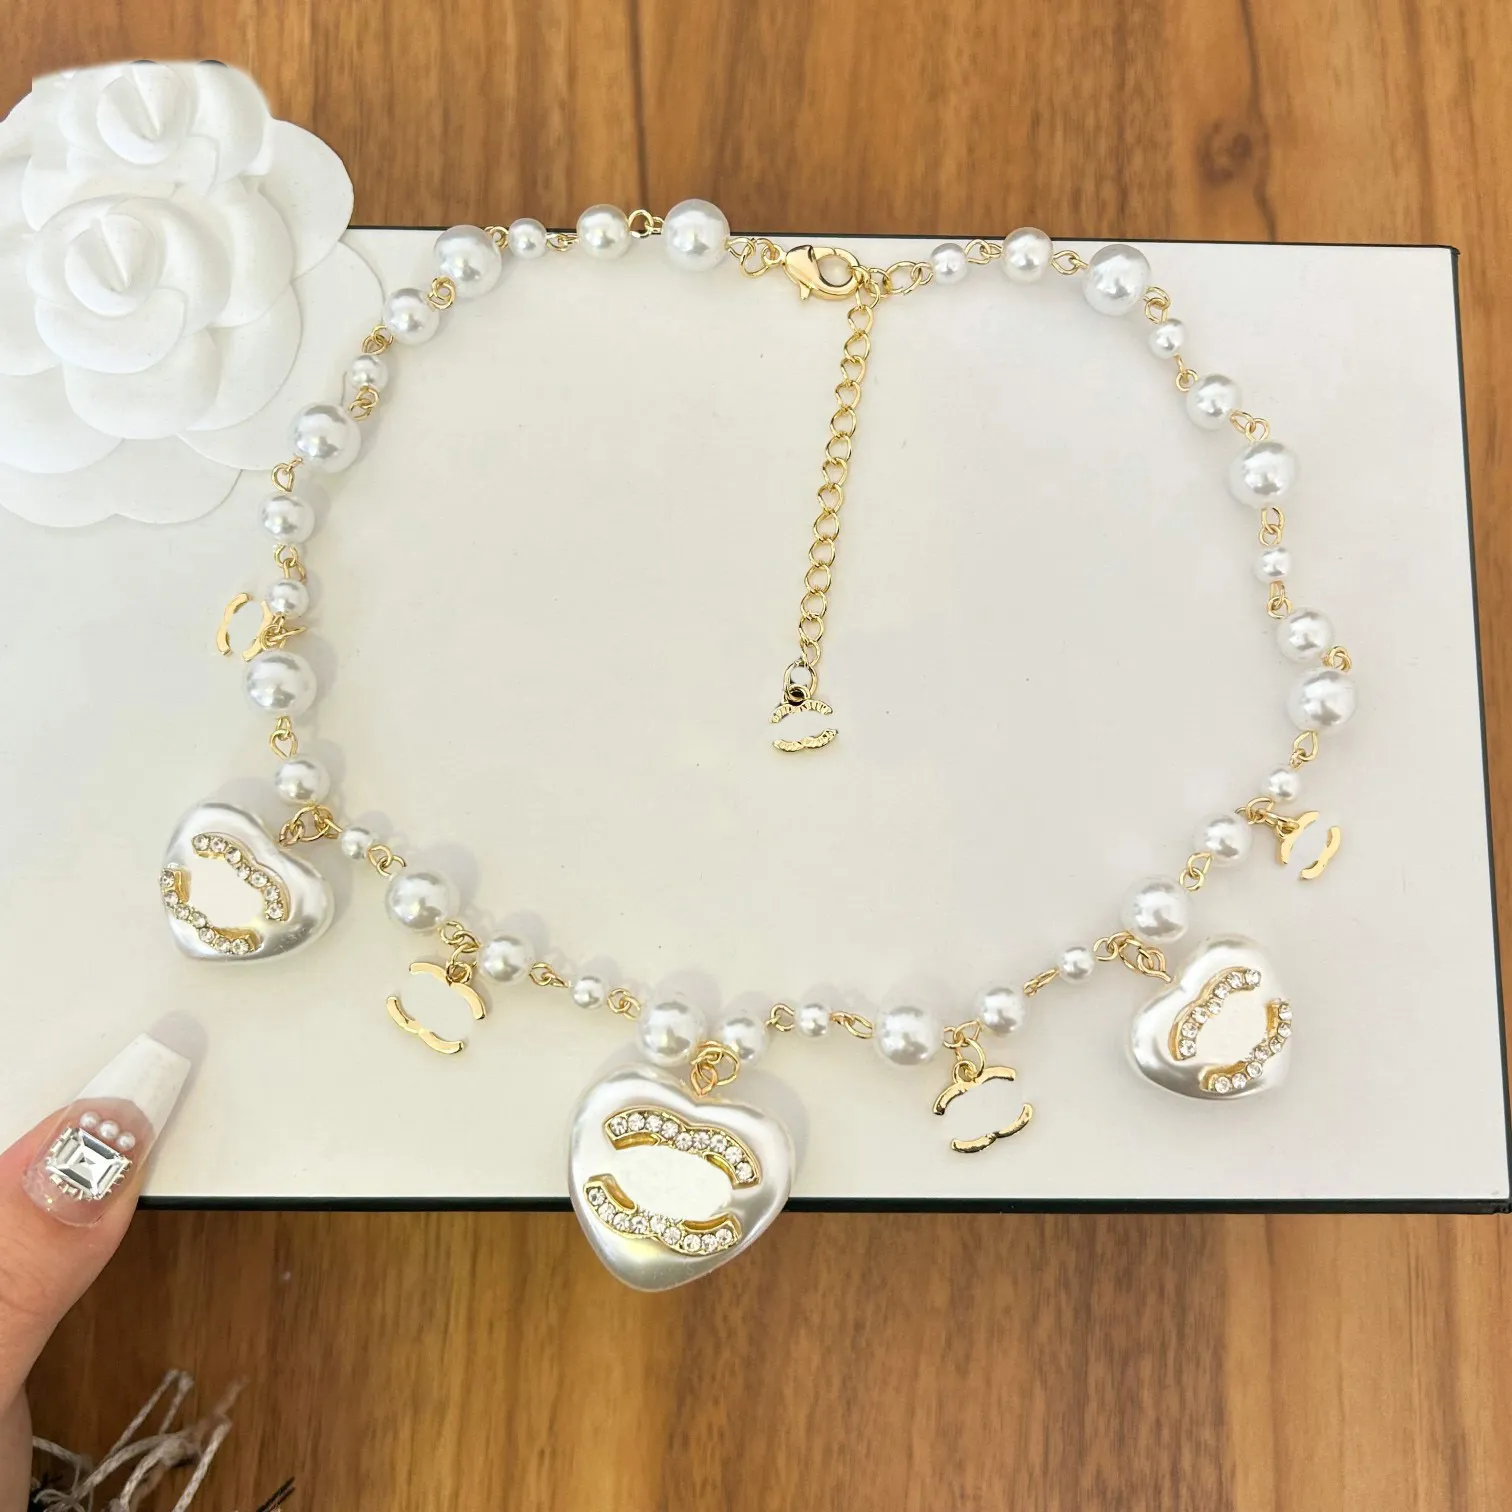 Gold Halskette Luxus Designer Halsketten Anhänger Choker Anhänger Kette Frauen Vergoldet Brief Statement Schmuck Zubehör Einstellbar